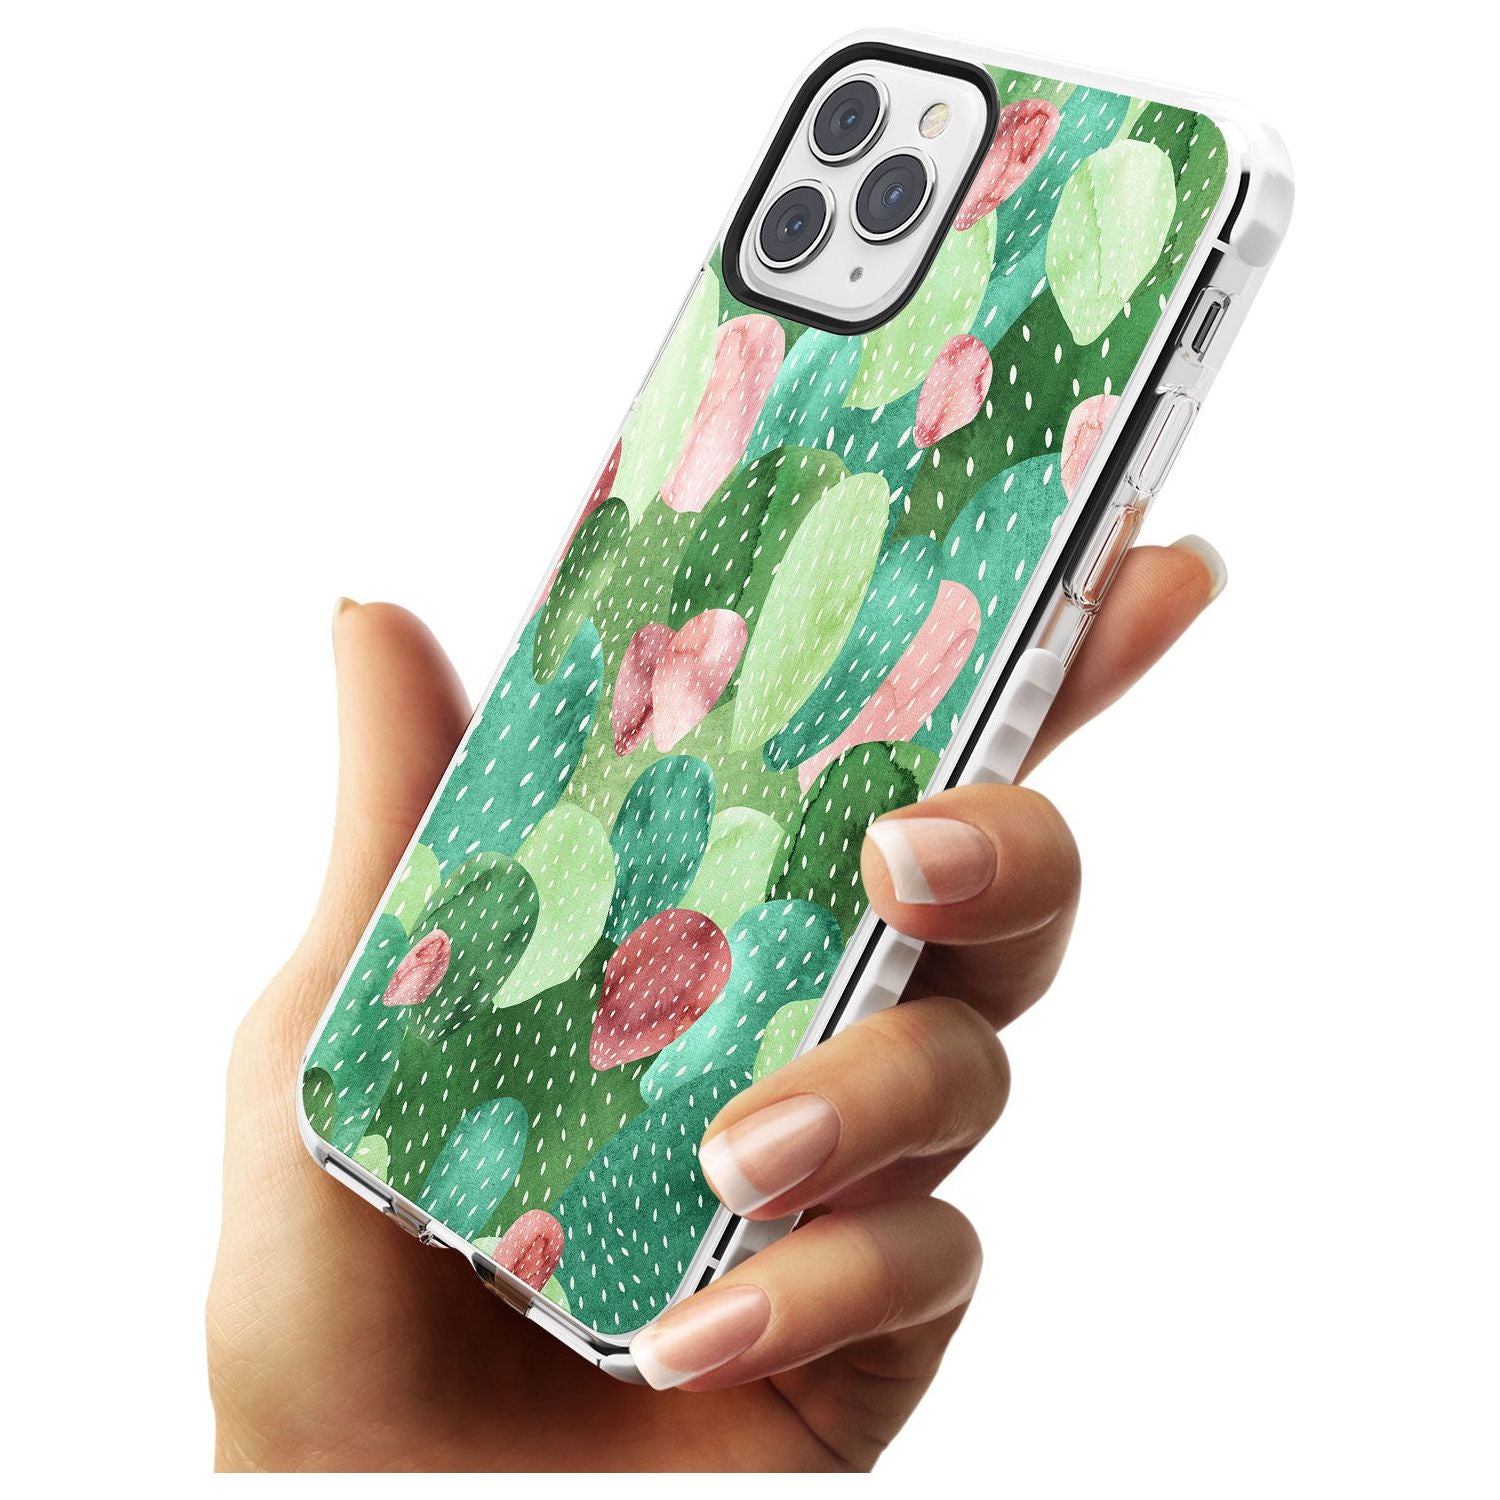 Colourful Cactus Mix Design Impact Phone Case for iPhone 11 Pro Max